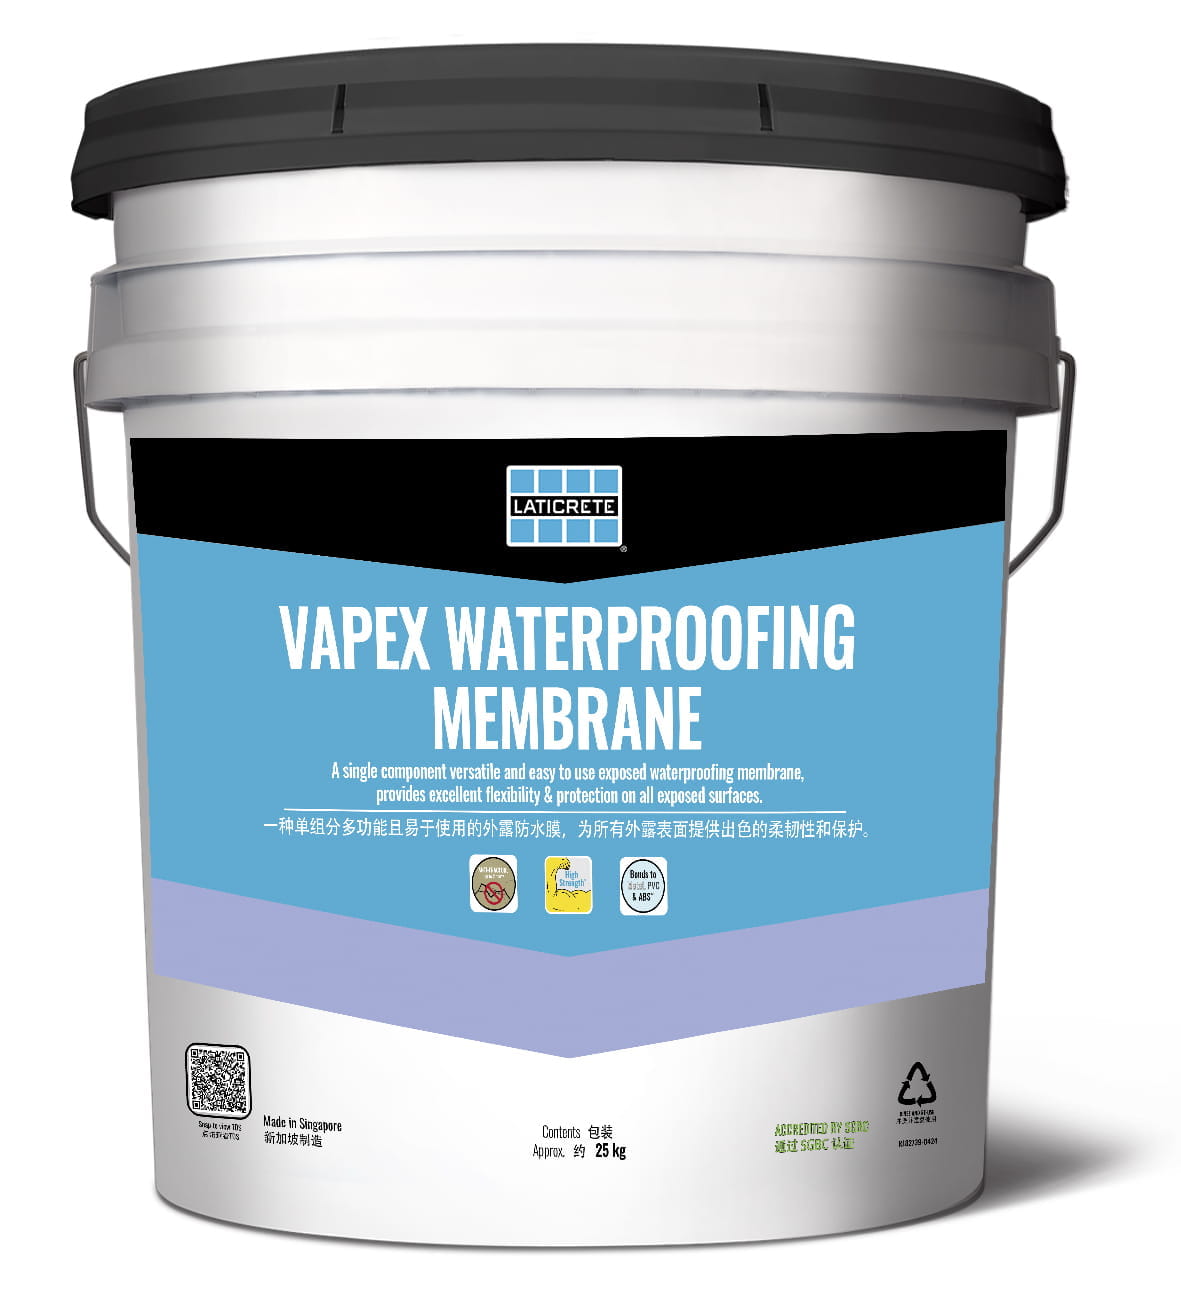 Vapex Waterproofing Membrane